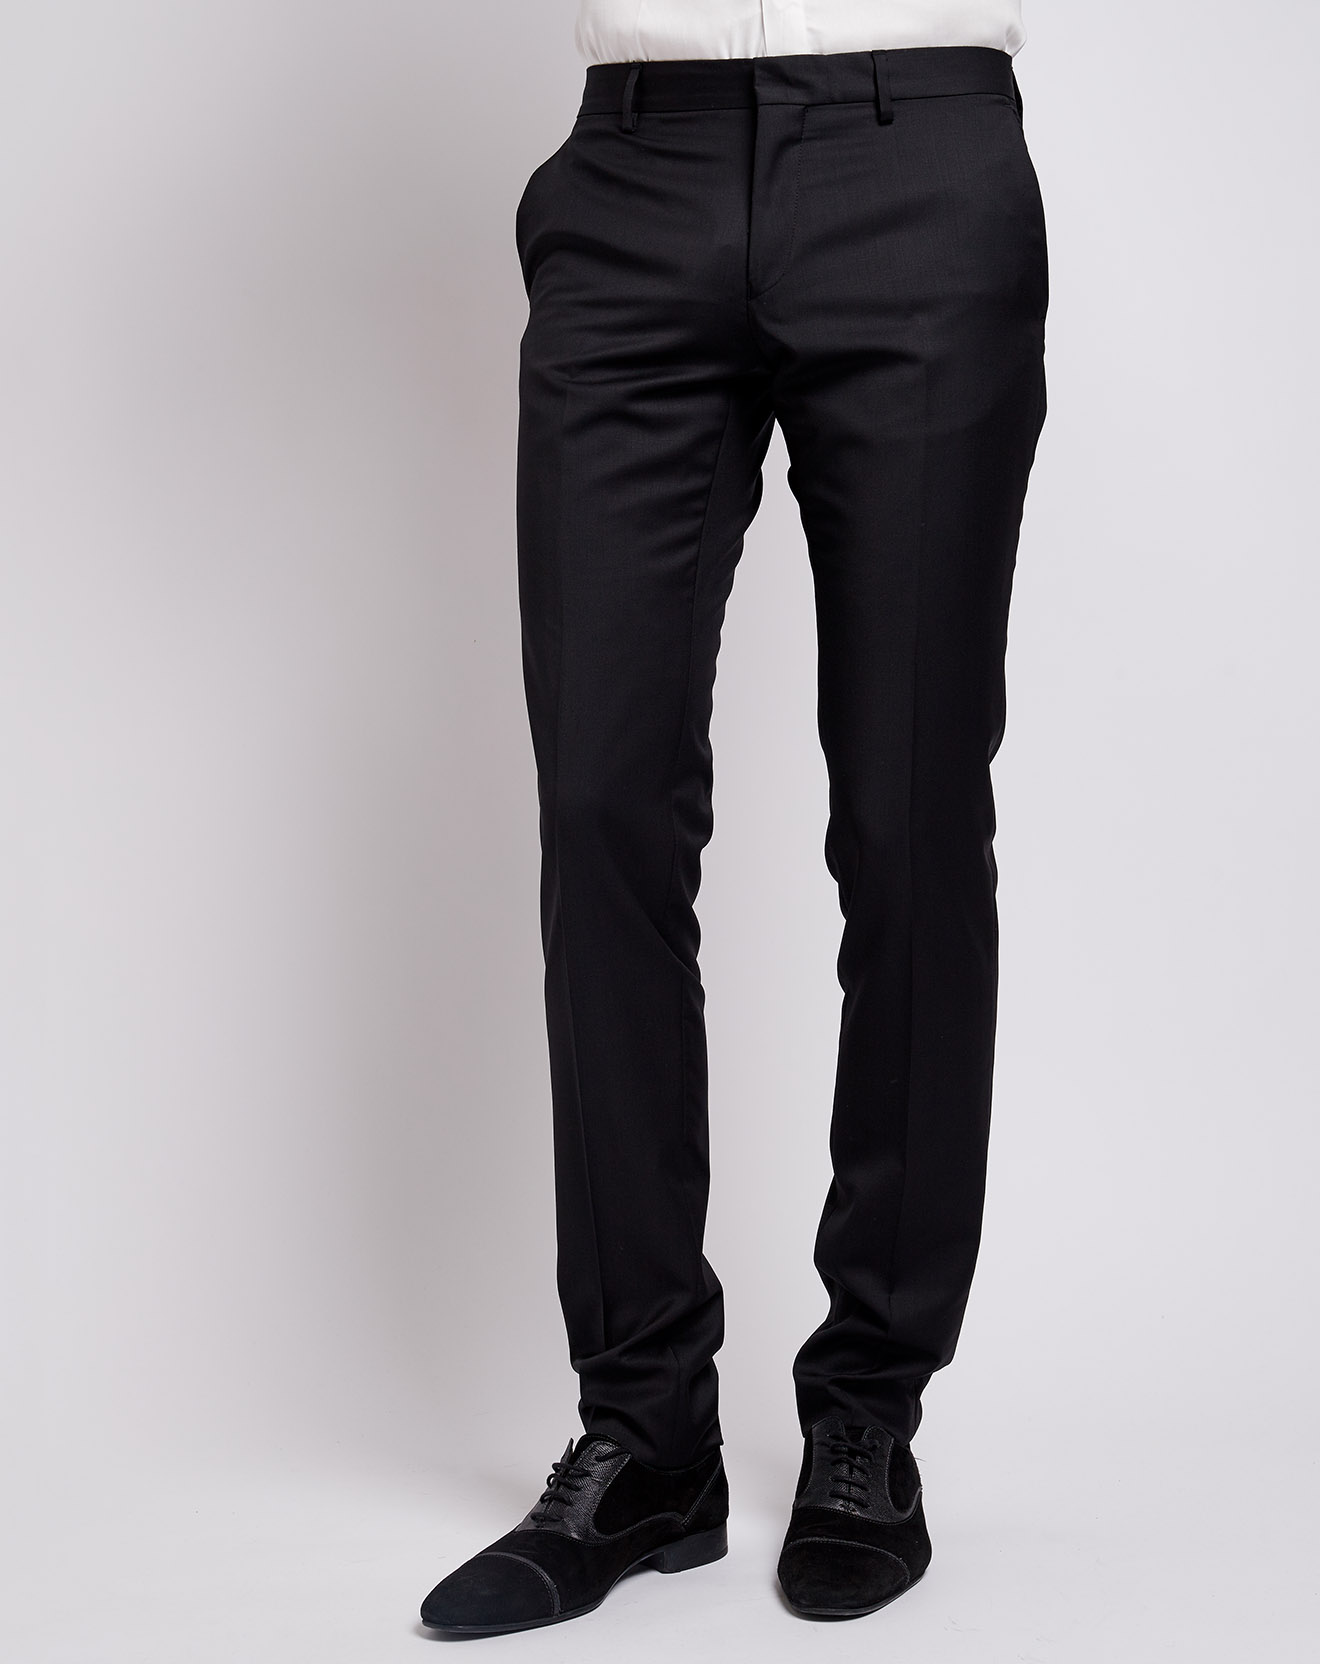 Pantalon 100% Laine Slim Super 120 noir